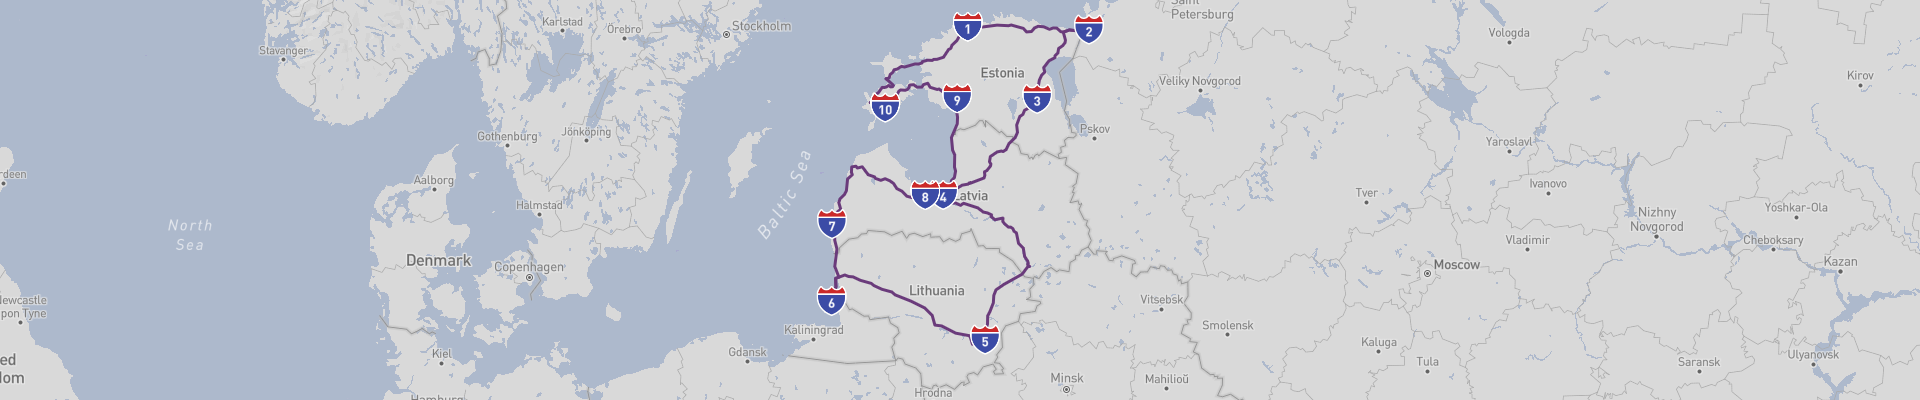 Страны Балтии на автомобиле